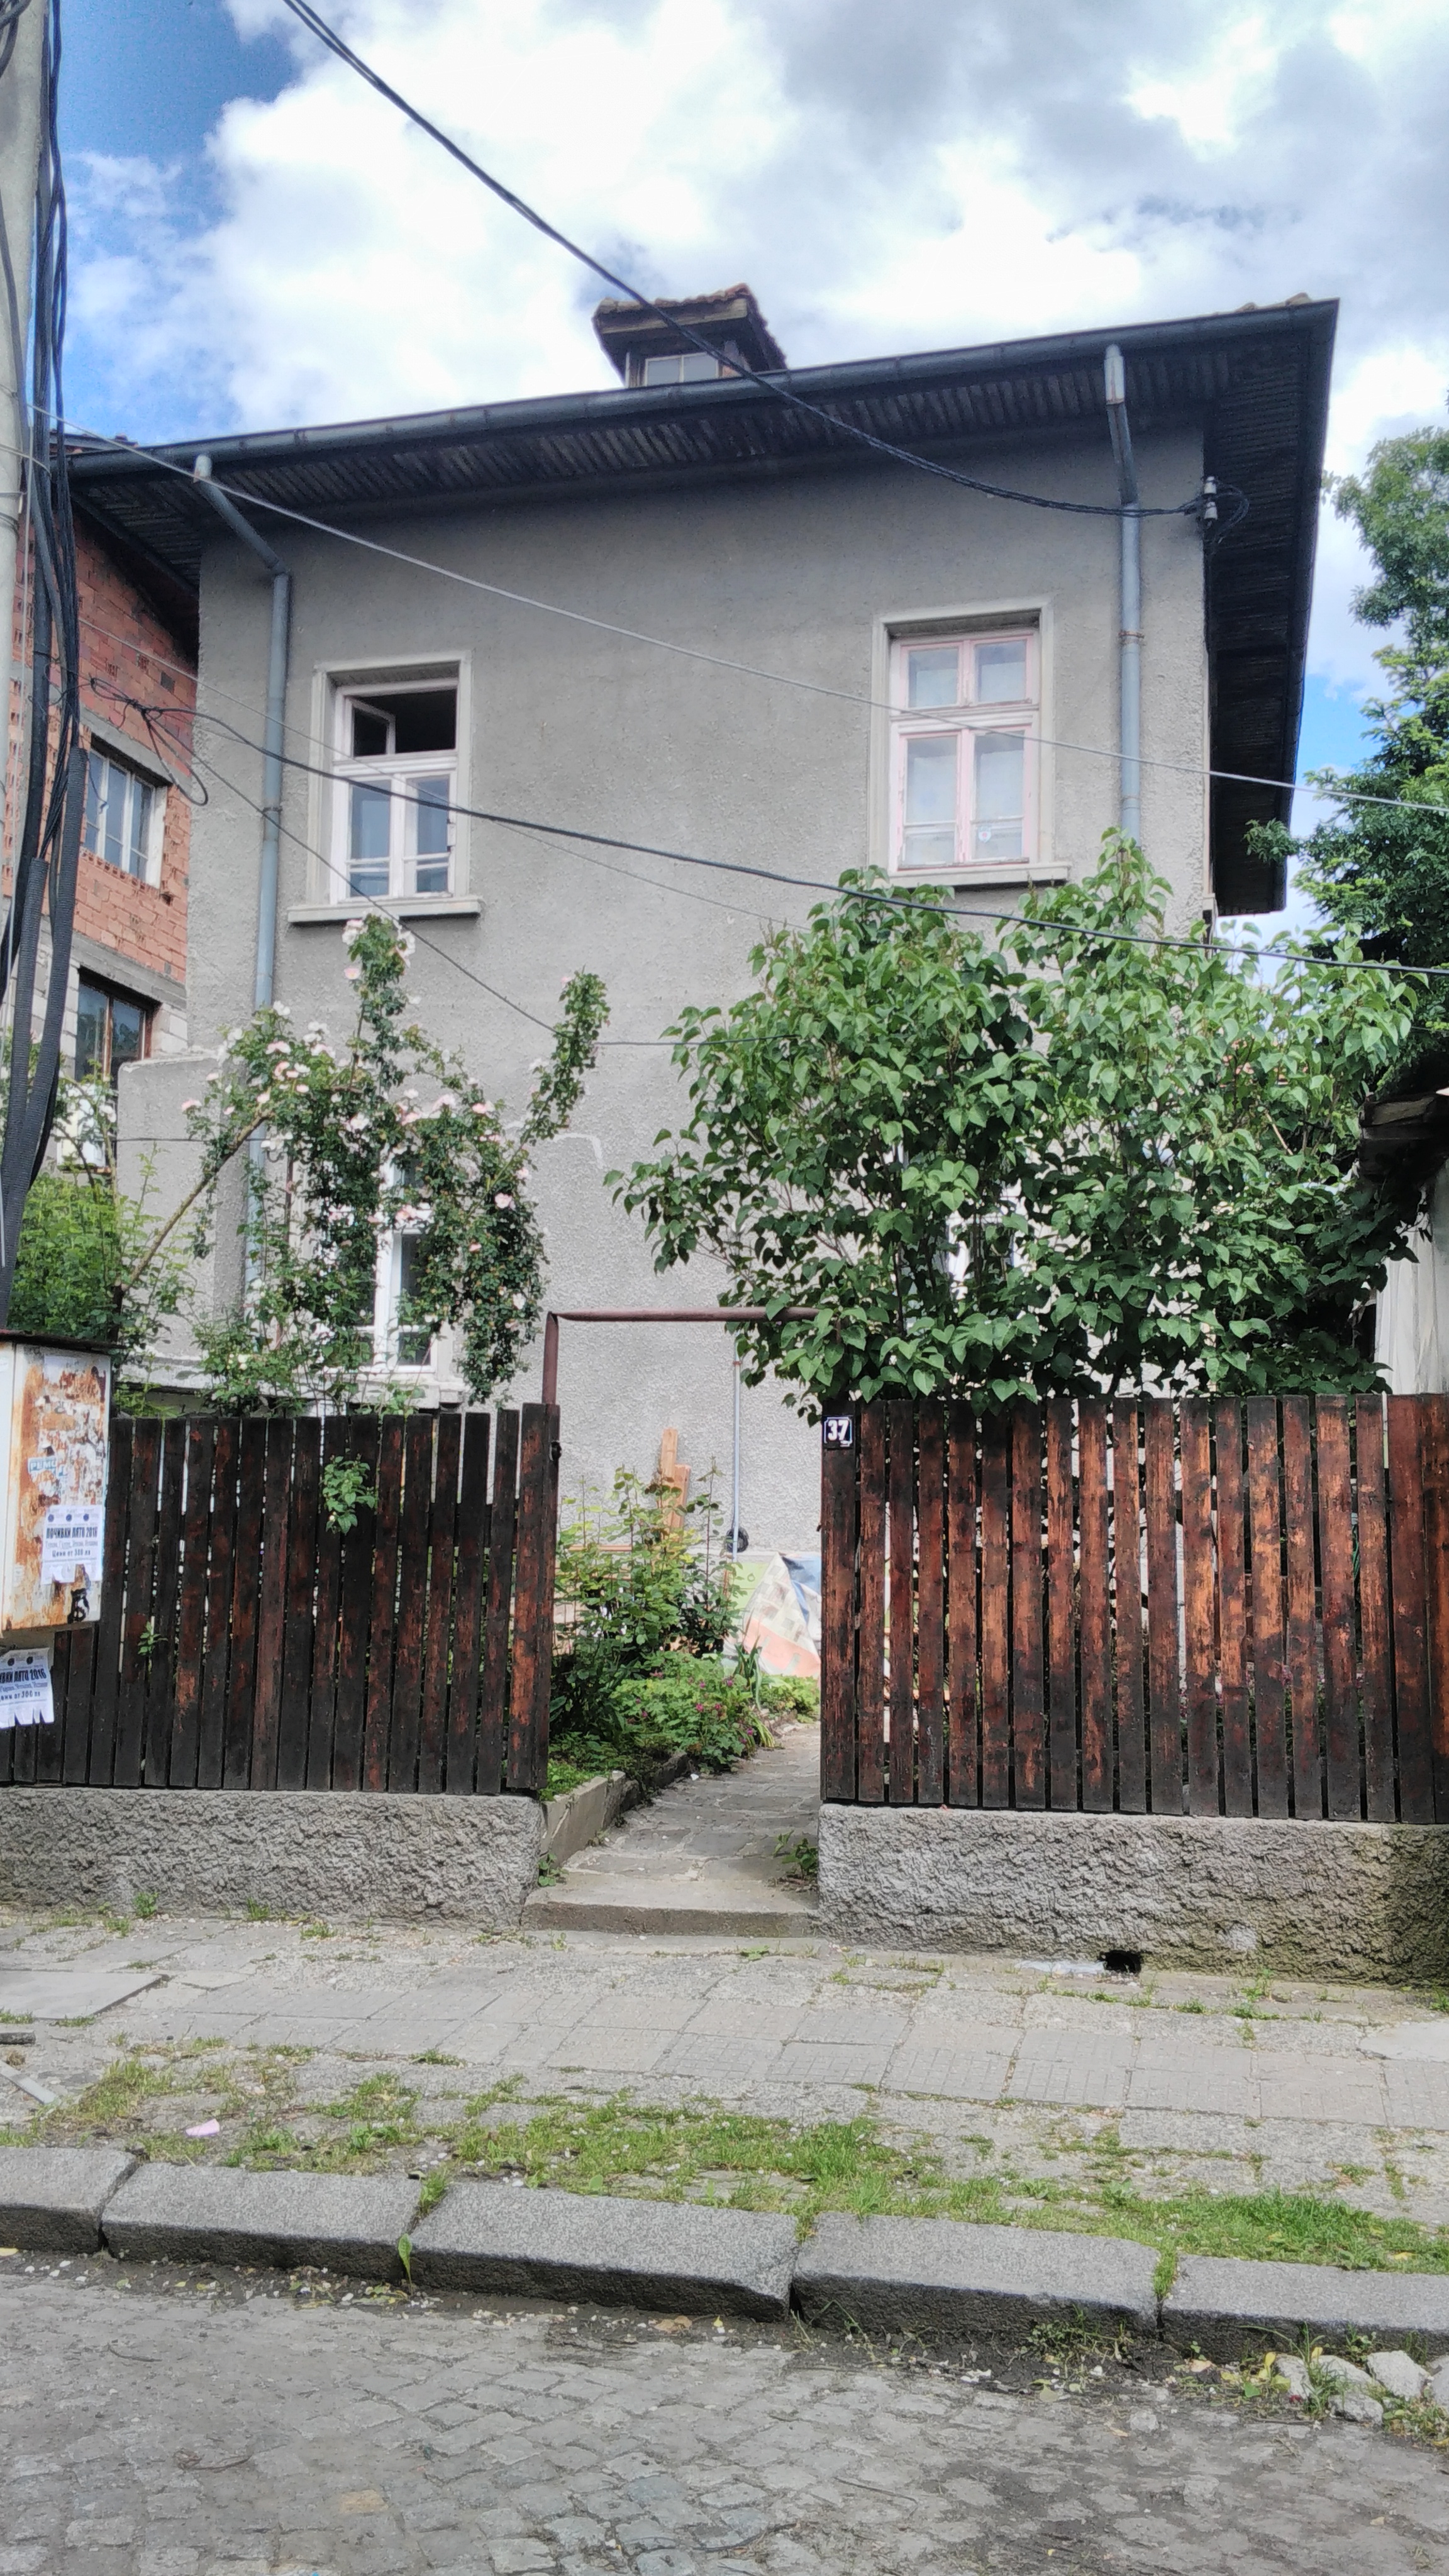 къща в близост до Оборище и Ситняково- нова изгодна цена 219900 евро - image